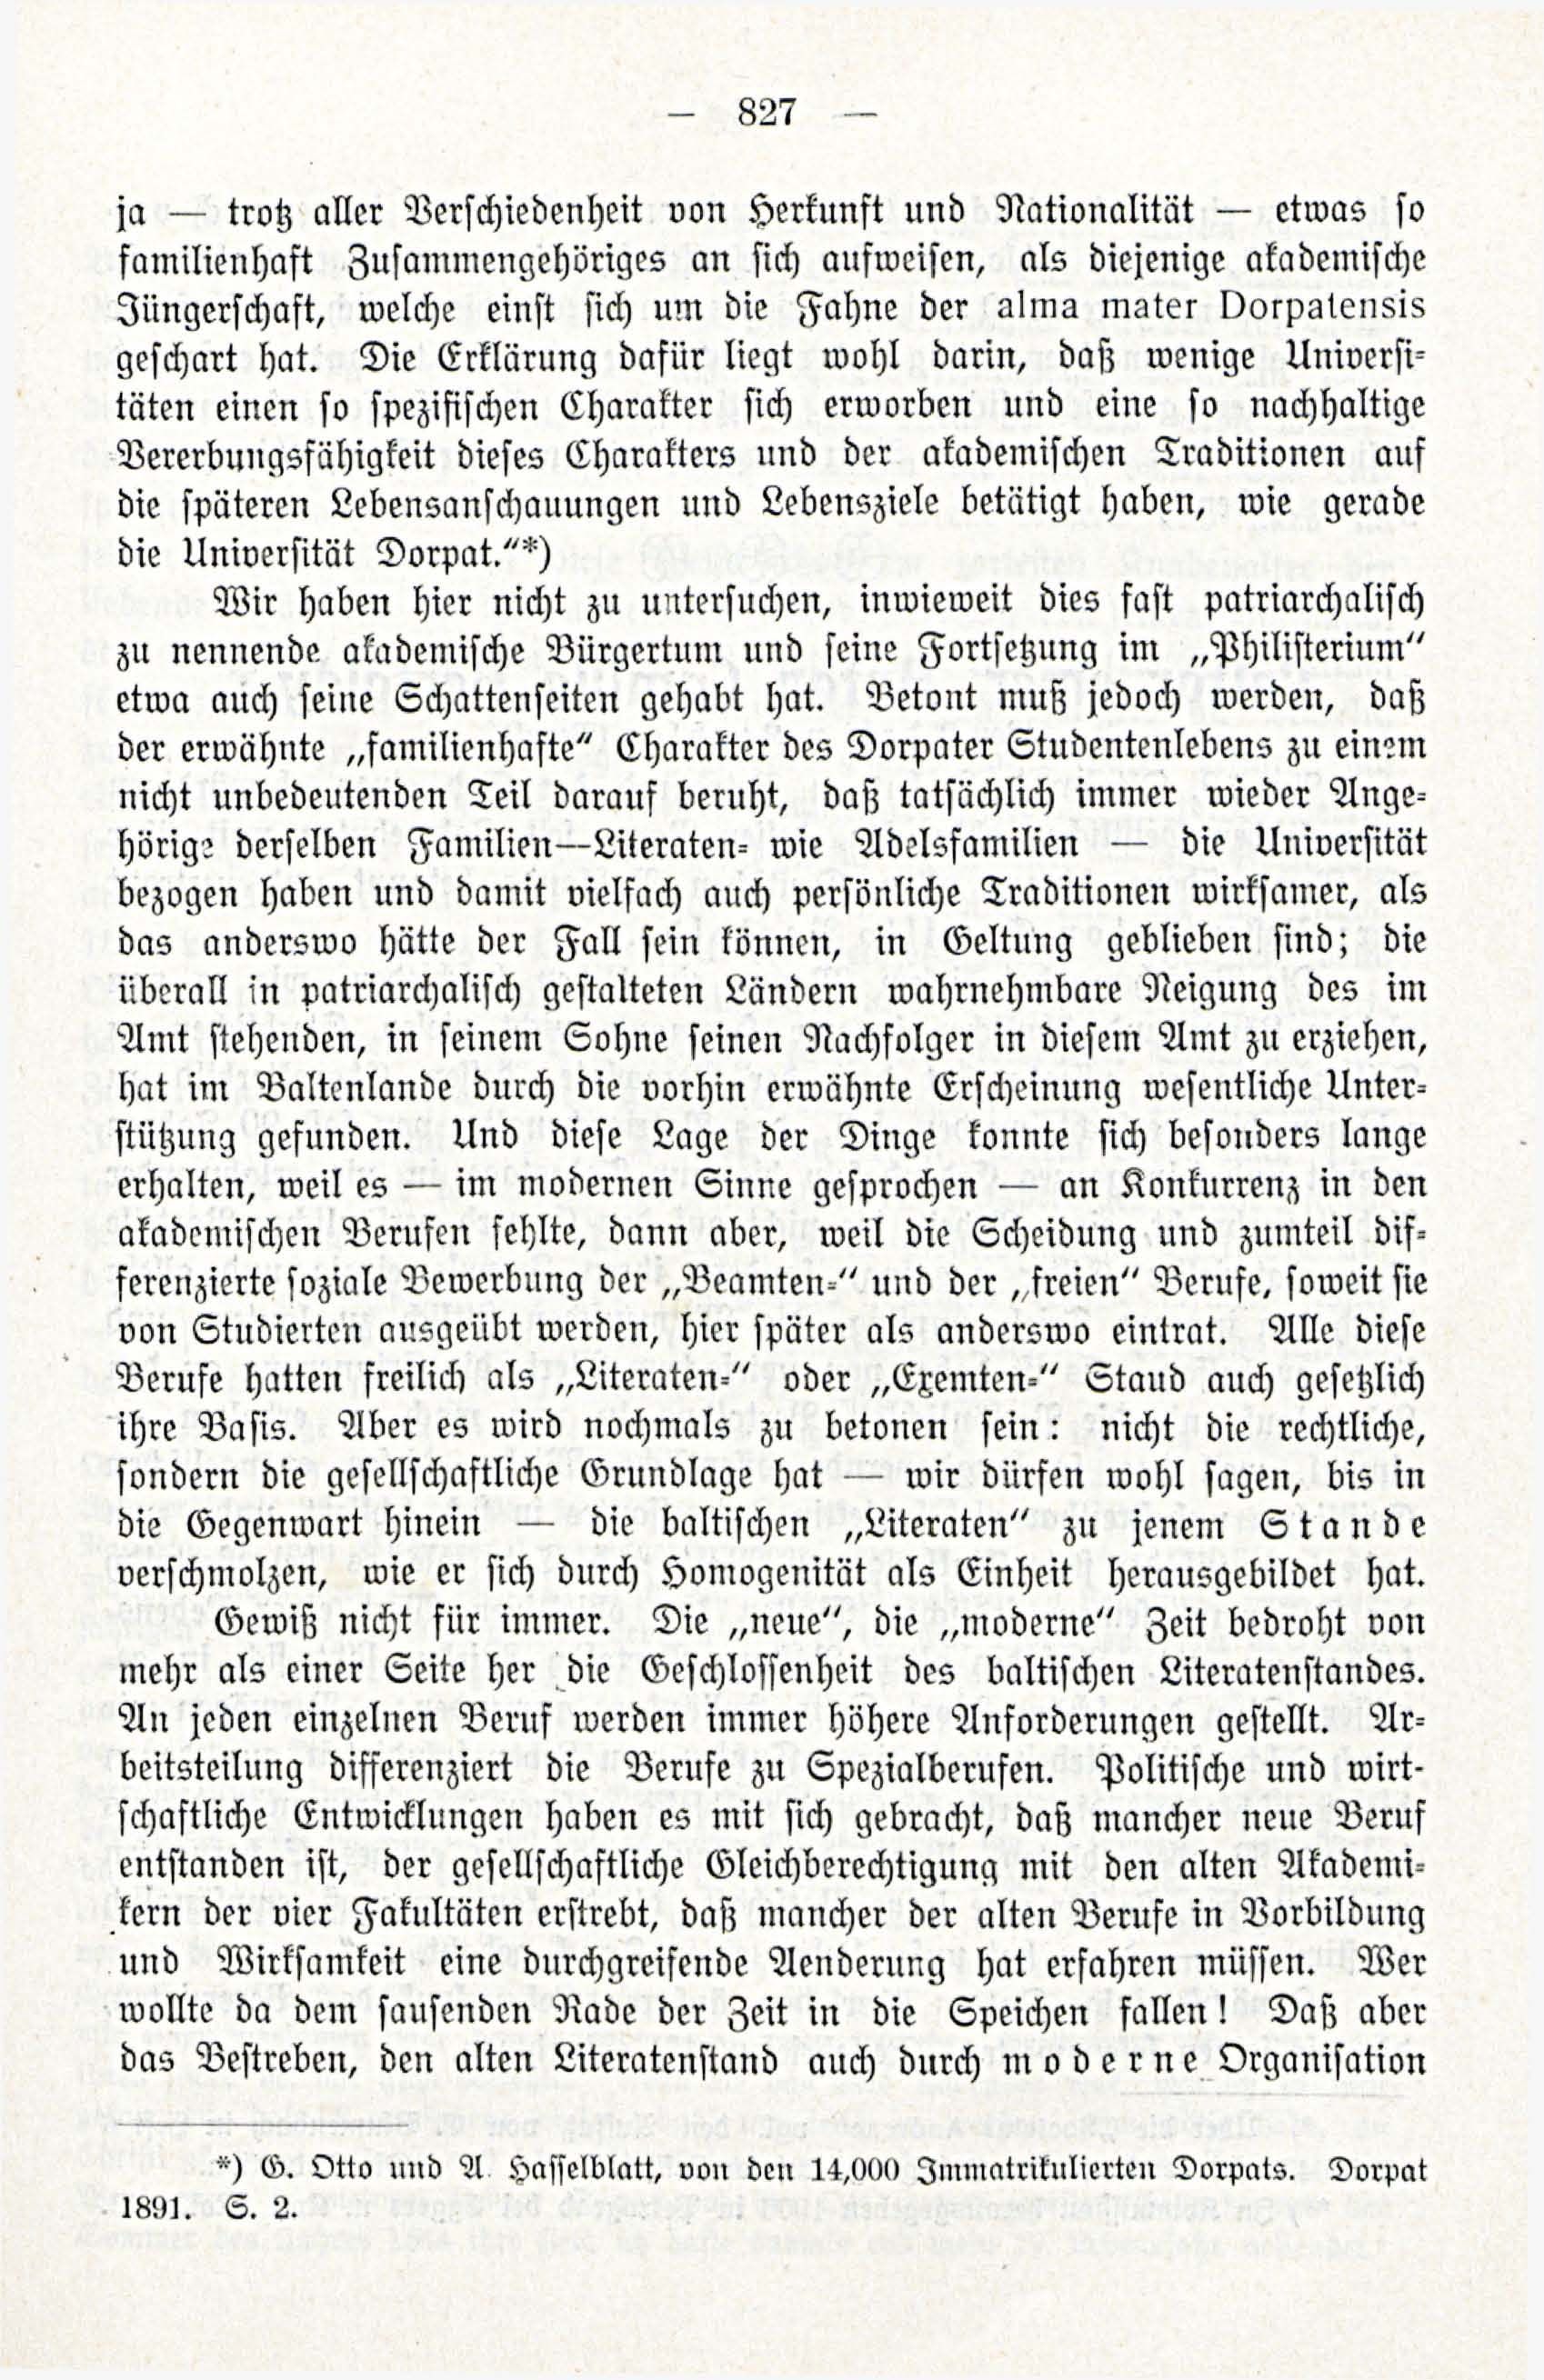 Zur Entwicklungesgescshichte des baltischen Literatenstandes (1914) | 9. (827) Main body of text